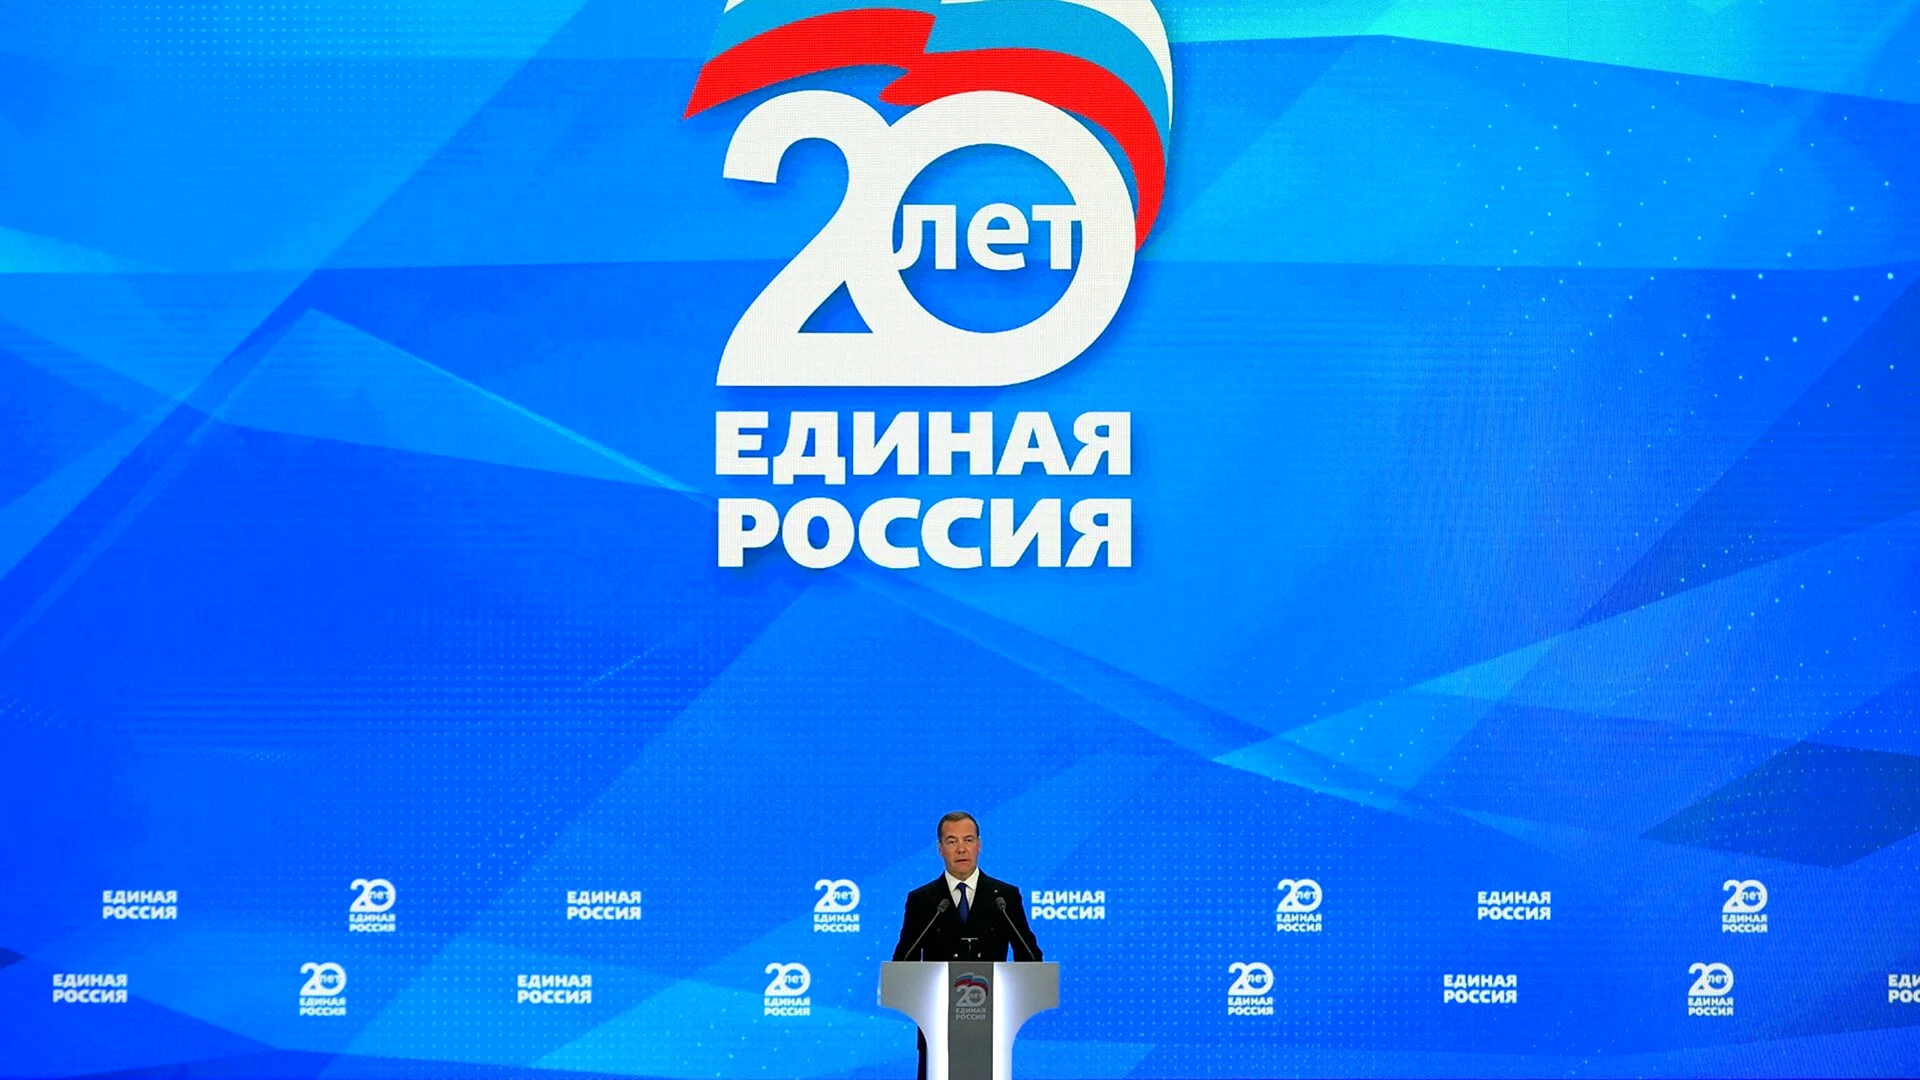 20 Съезд Единой России эмблема